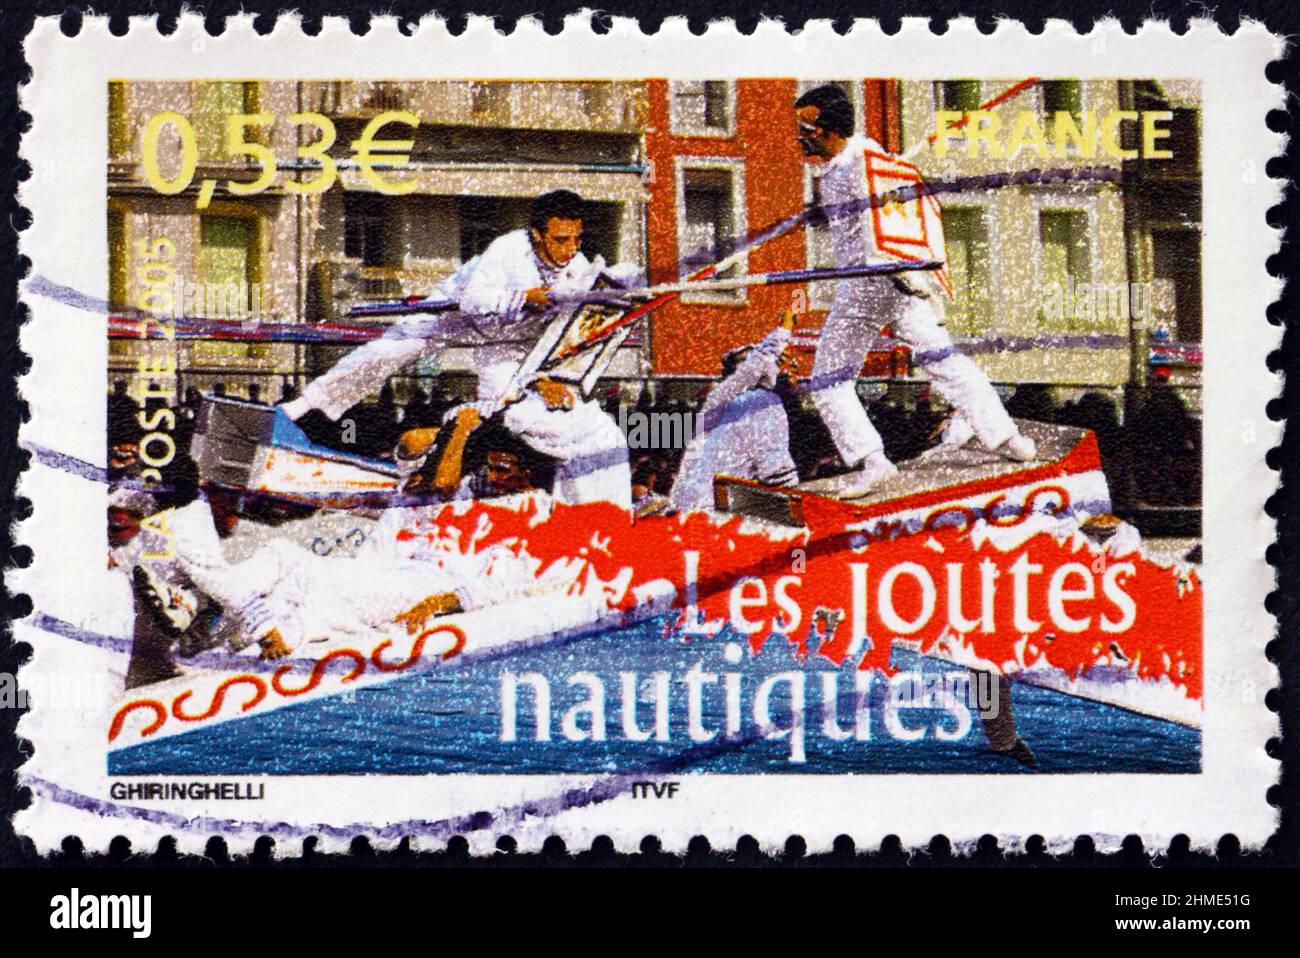 FRANKREICH - UM 2005: Eine in Frankreich gedruckte Briefmarke zeigt nautischen Jausting, Aspekt des Lebens, um 2005 Stockfoto